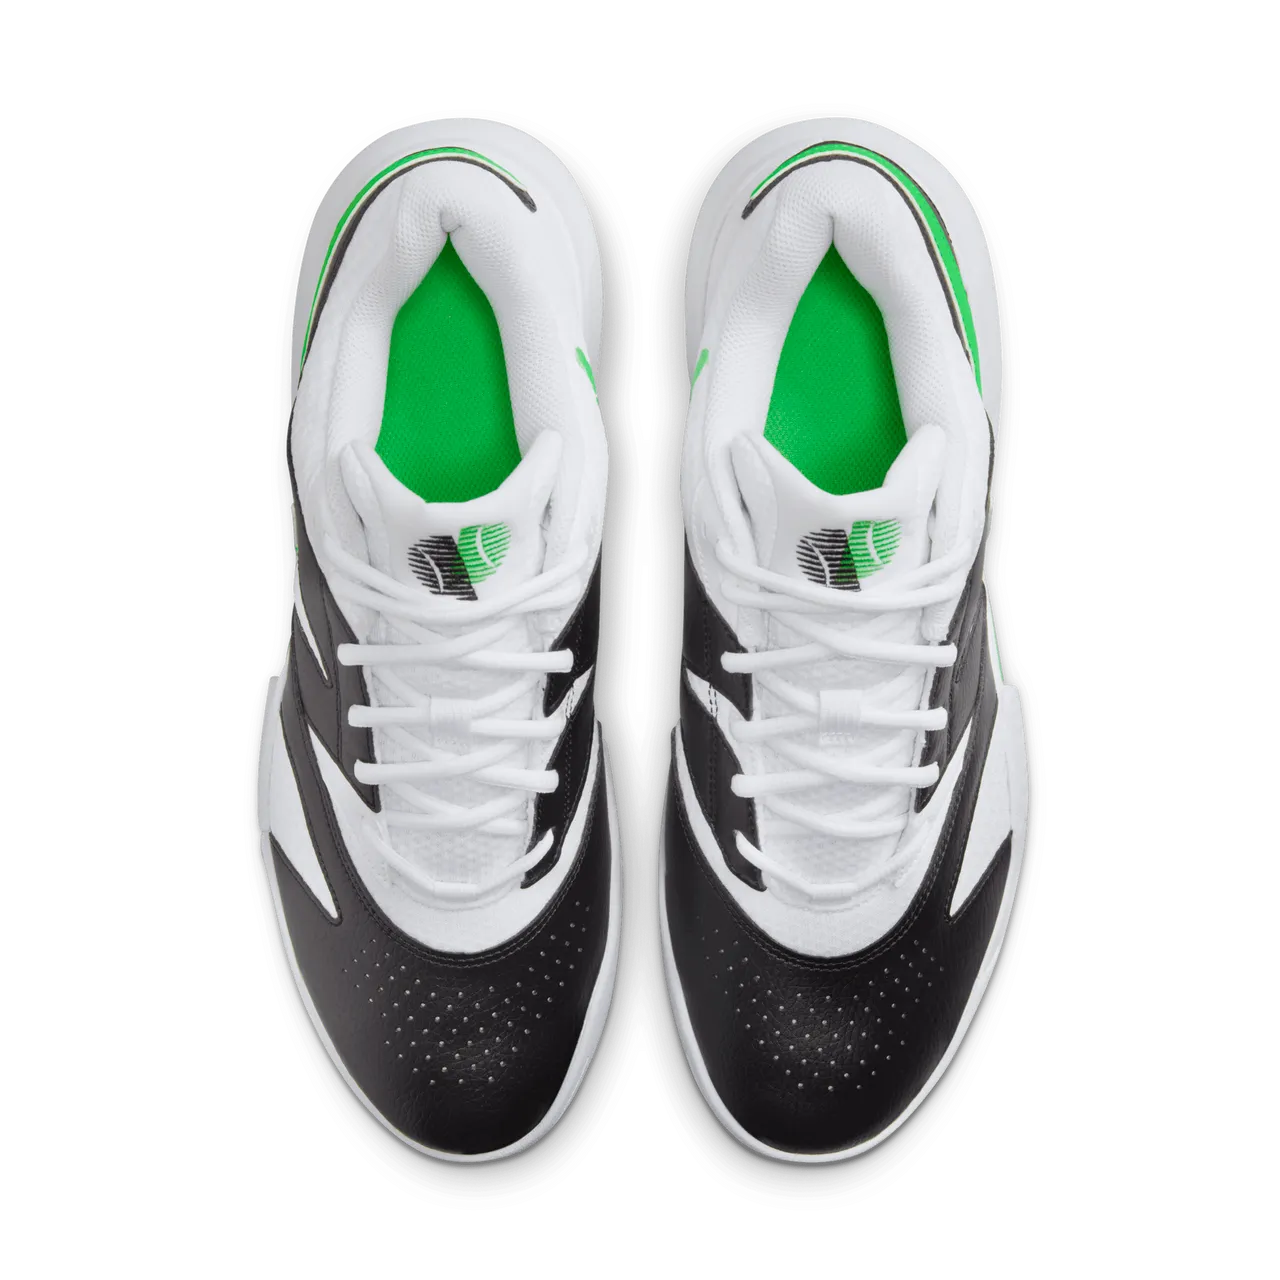 NikeCourt Lite 4 tennisschoenen voor heren - Wit